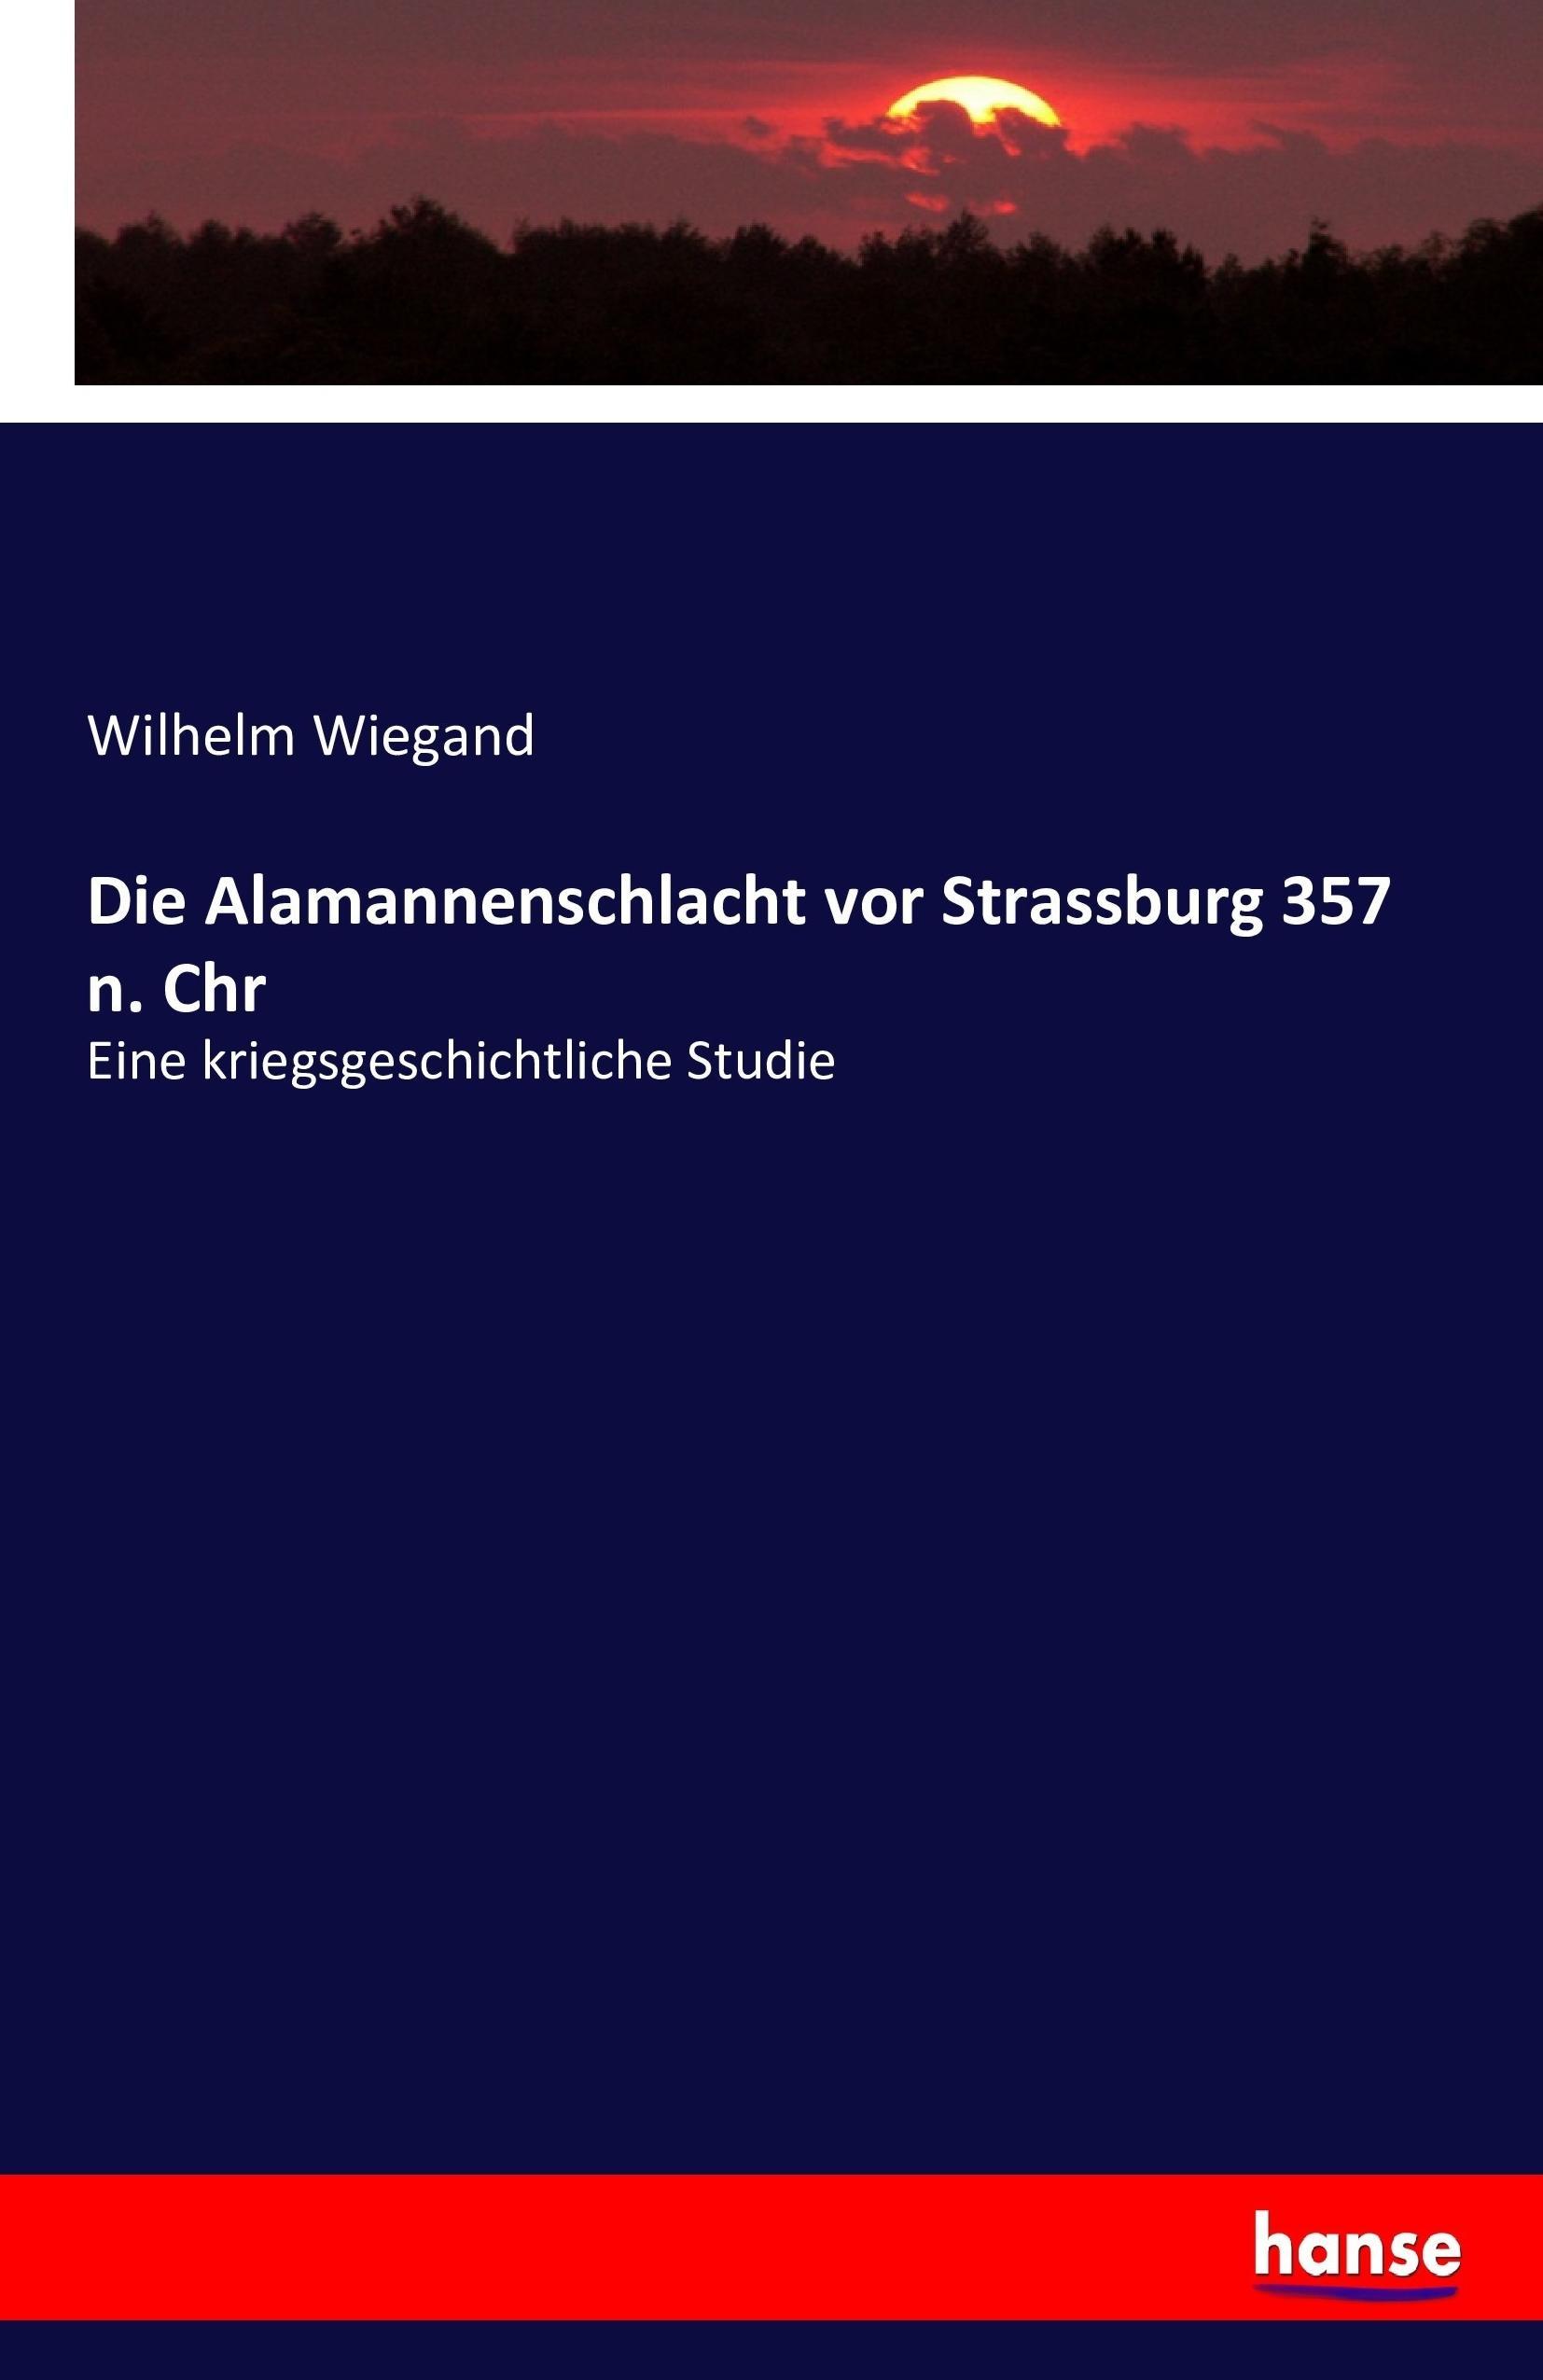 Die Alamannenschlacht vor Strassburg 357 n. Chr - Wiegand, Wilhelm